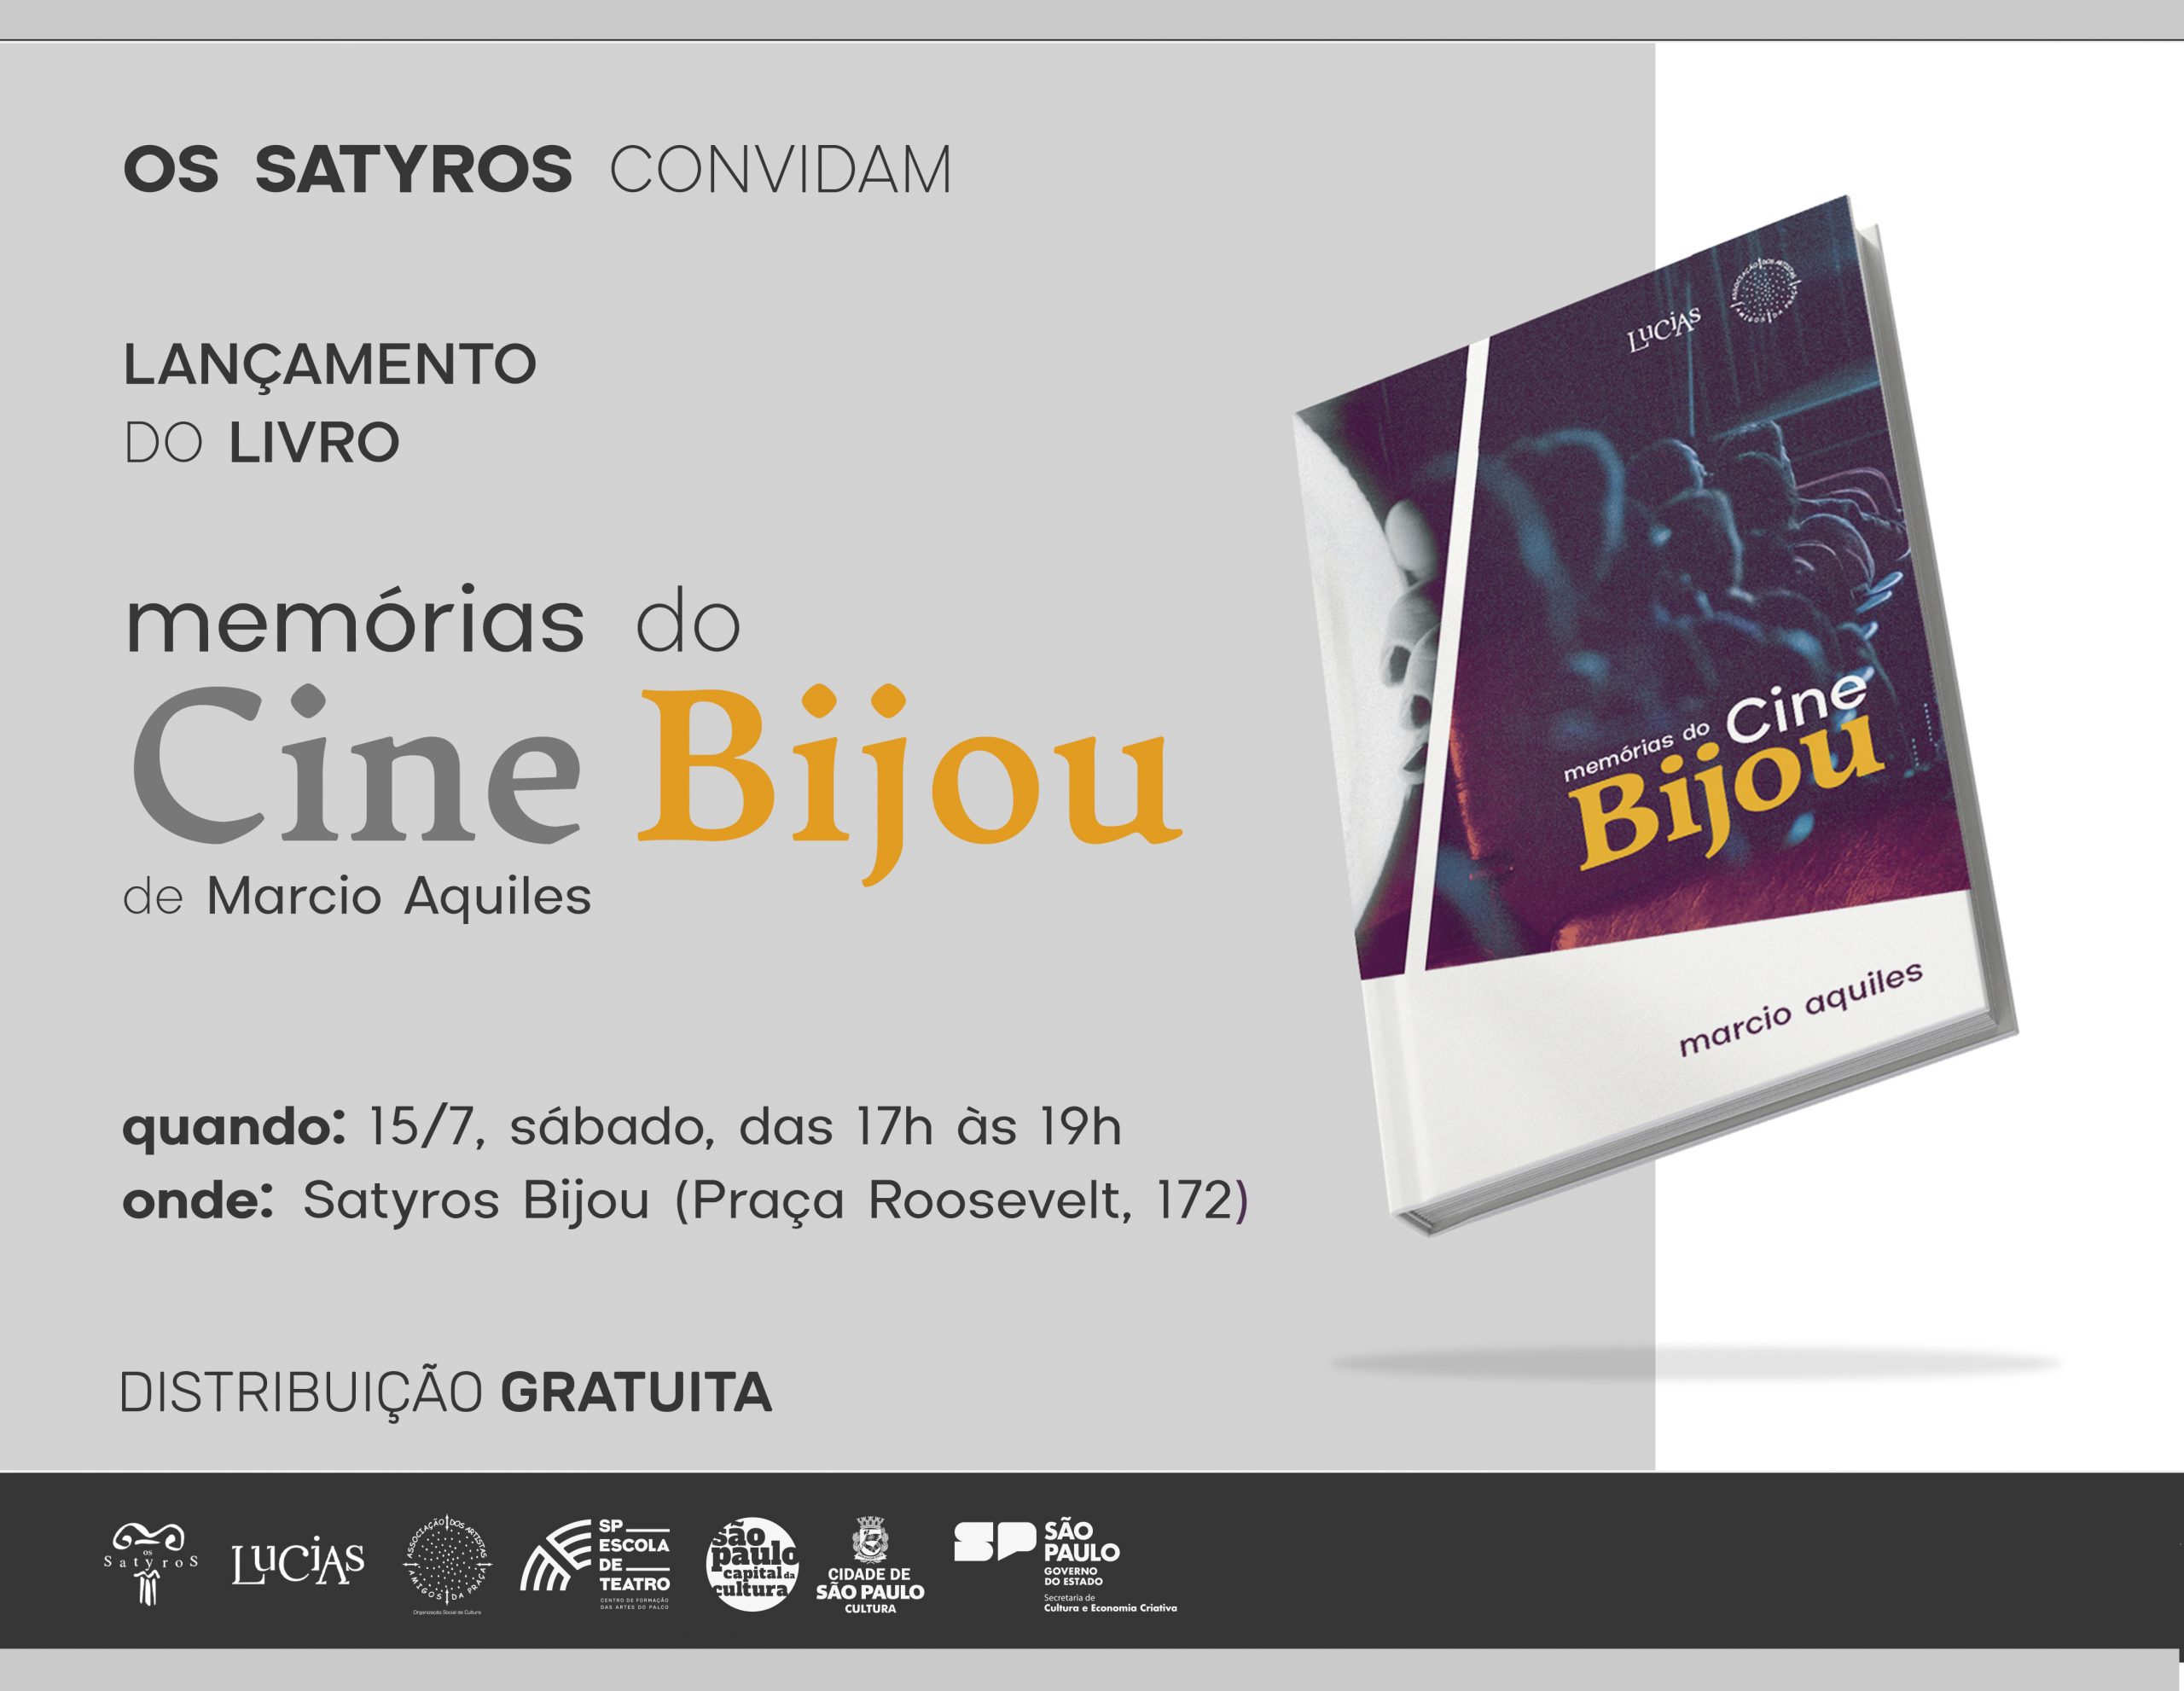 Cartaz de divulgação do lançamento do livro "memórias do Cine Bijou", de Marcio Aquiles